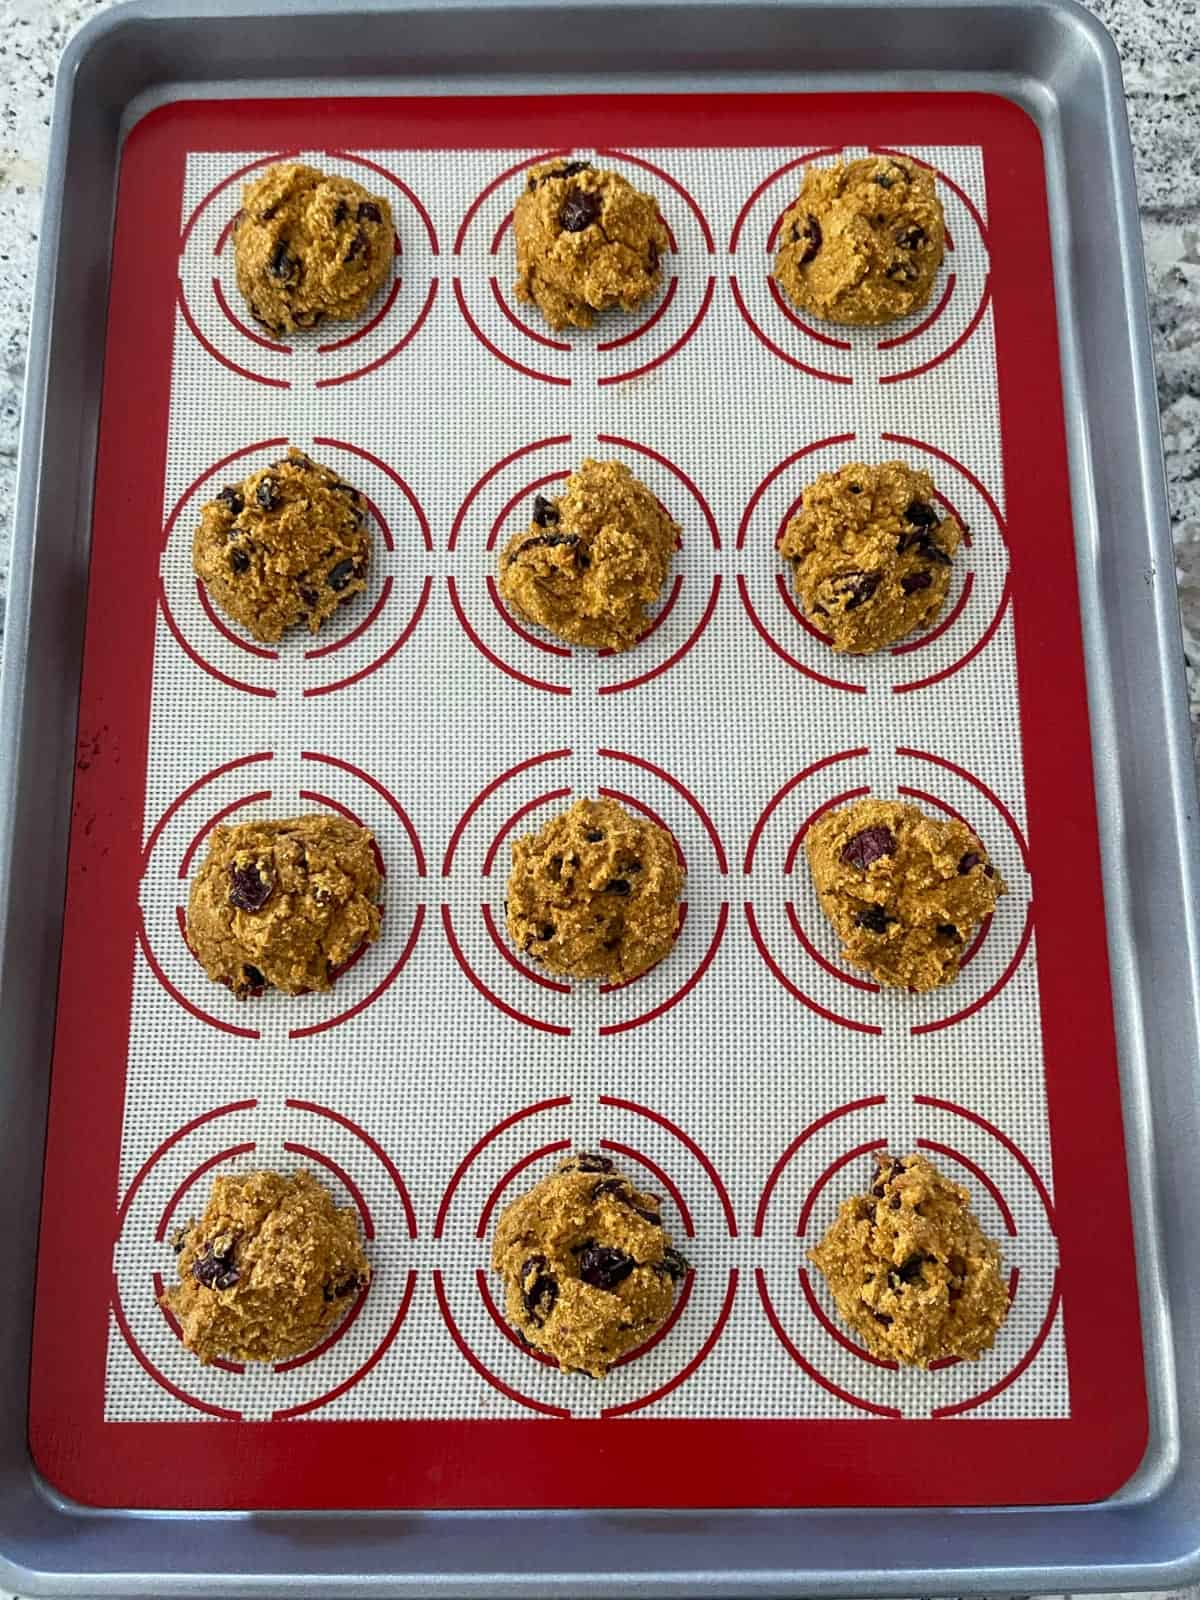 Unbaked pumpkin quinoa cranberry cookies on baking sheet.